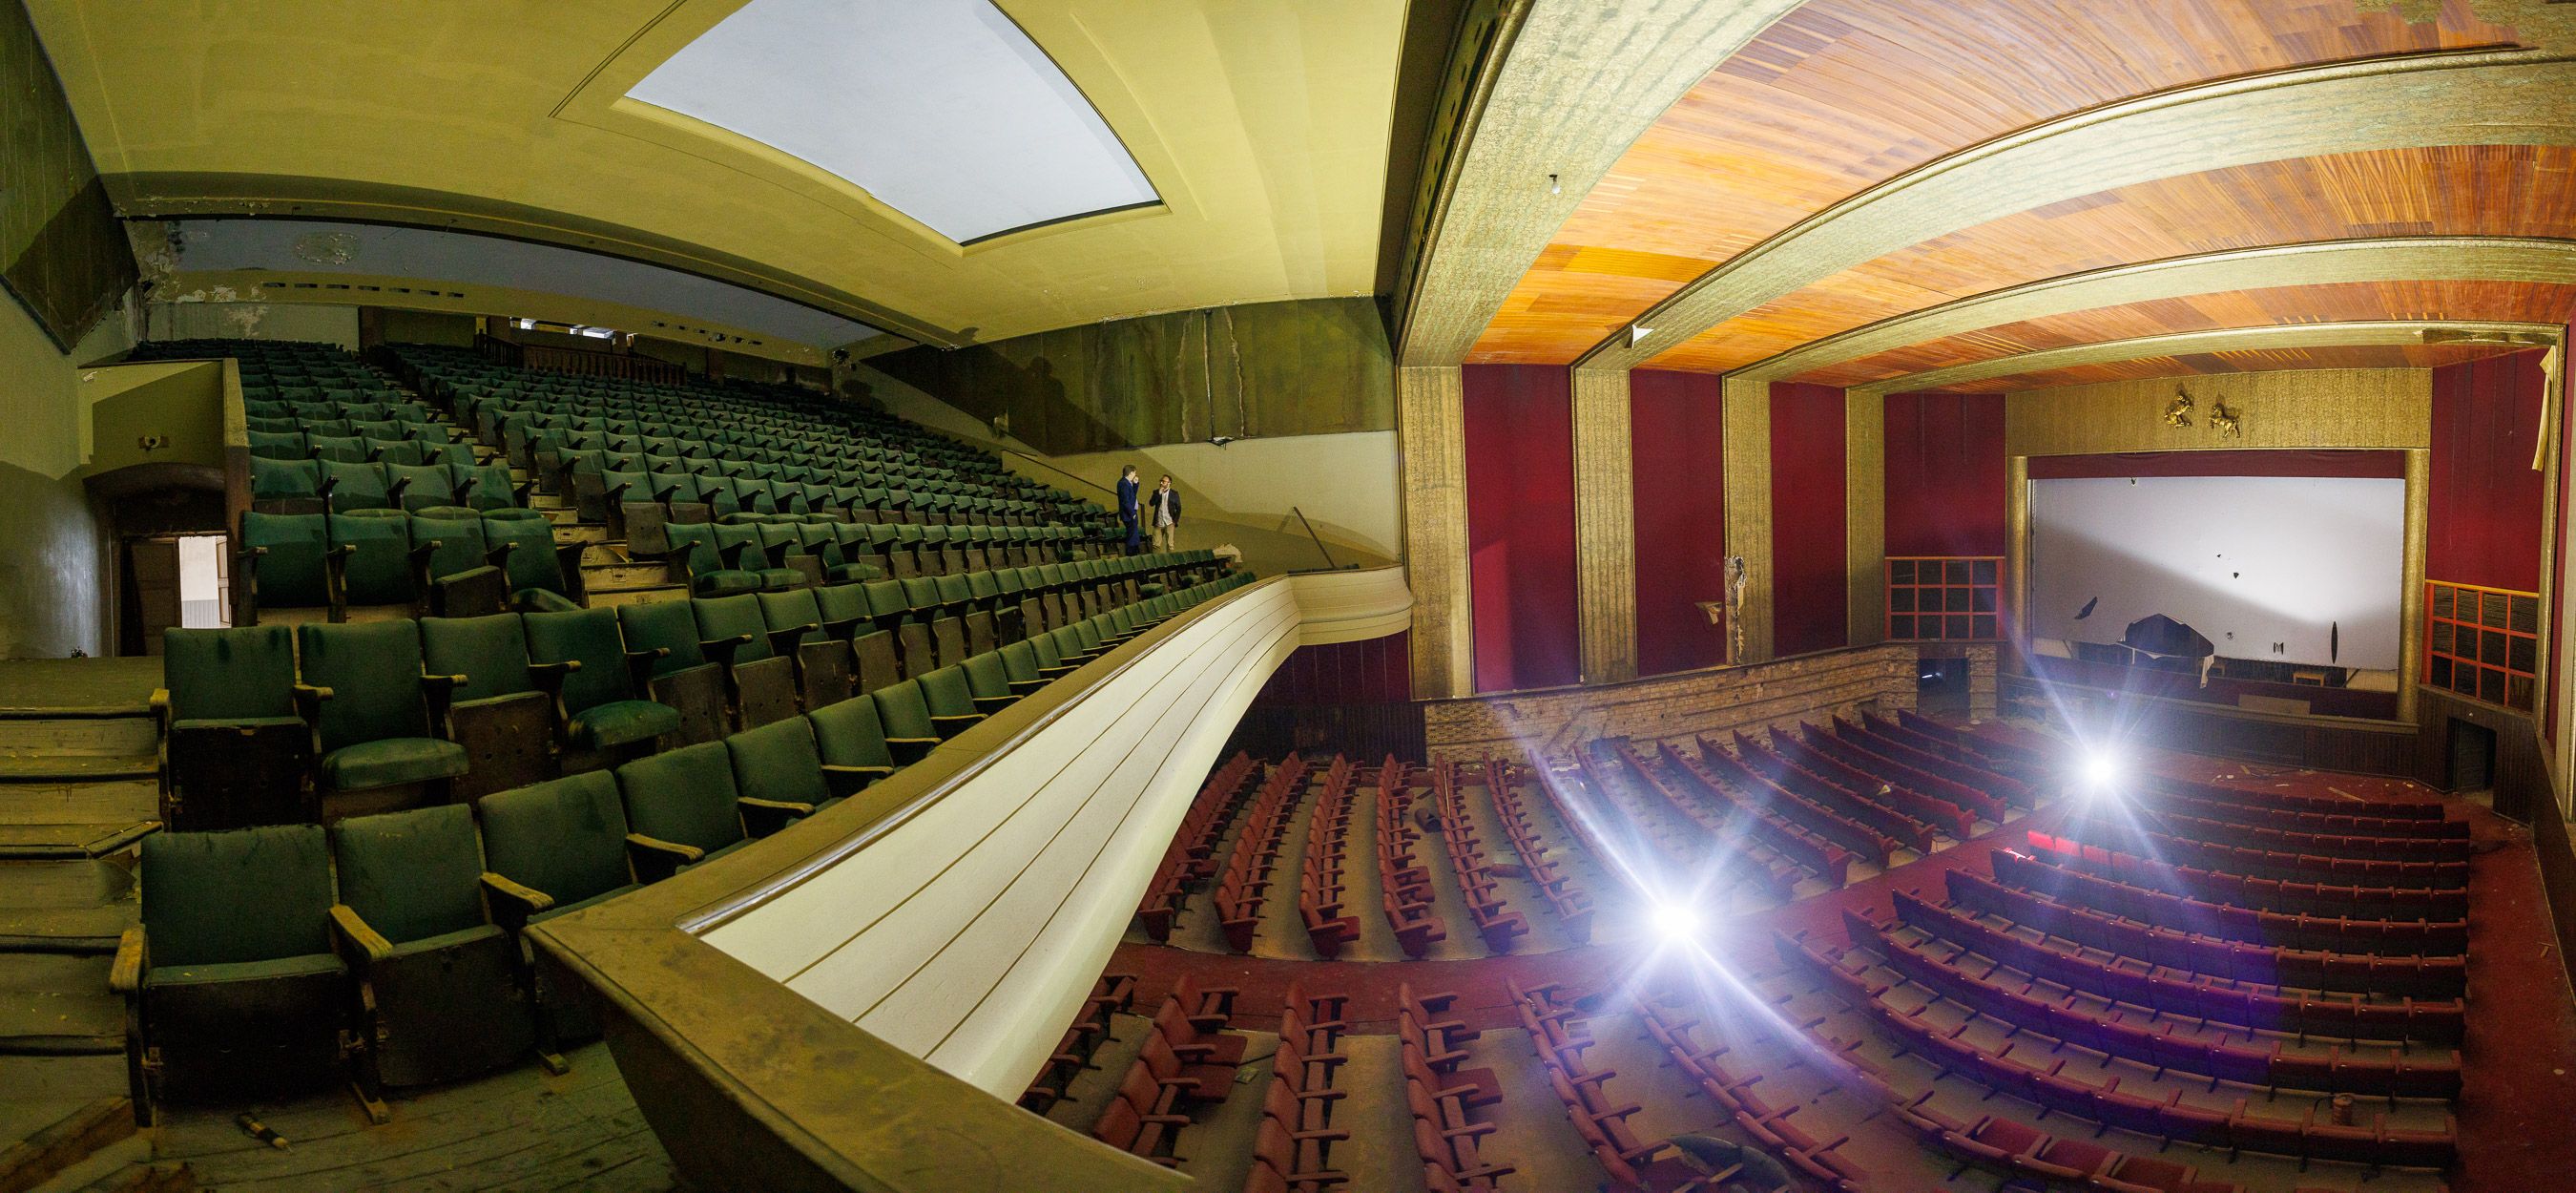 Panorámica del estado actual del antiguo Cine Jerezano, que cuenta ya los meses para renacer como teatro de grandes producciones y espacio multifuncional en el centro.